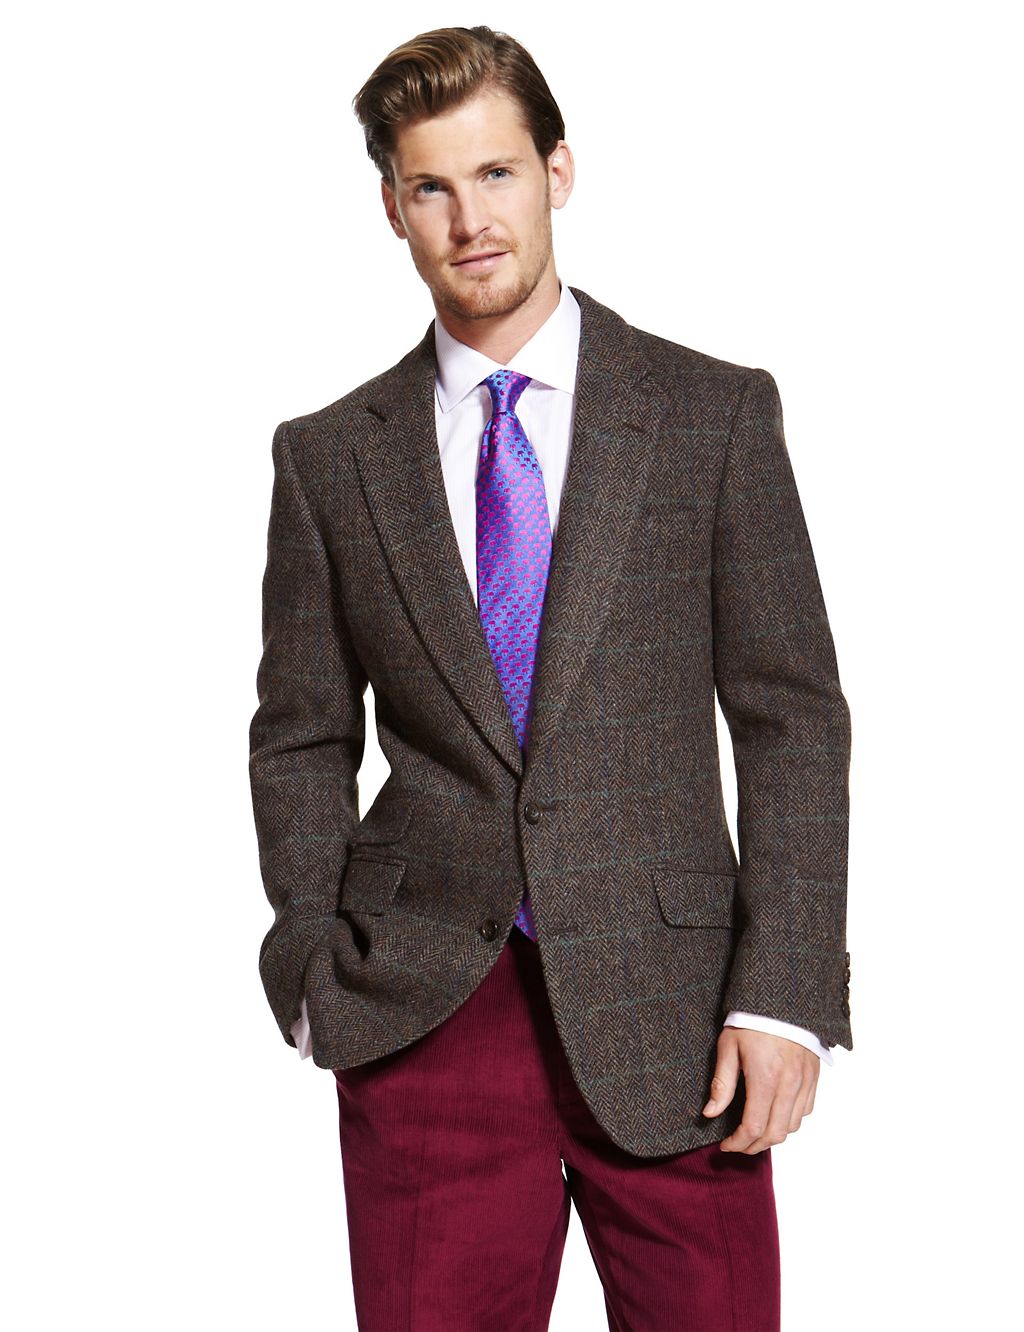 Luxury Pure Wool Harris Tweed Checked Jacket 3 of 8